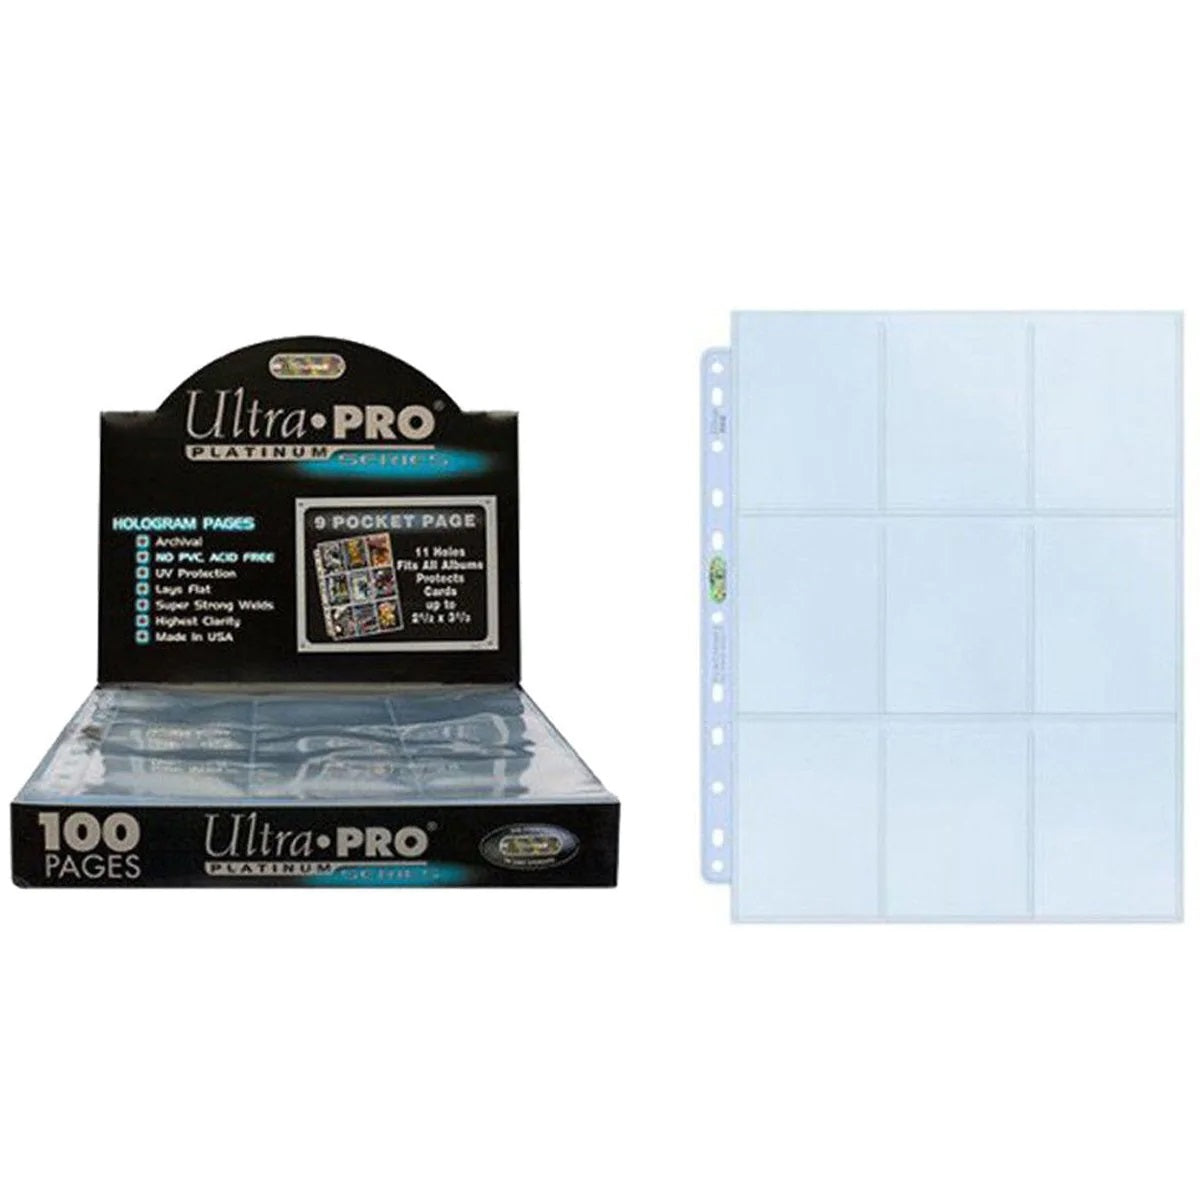 Ultra PRO Hologram Pages Platinum Series 9 Pockets 11 Holes for Card Album / Binder